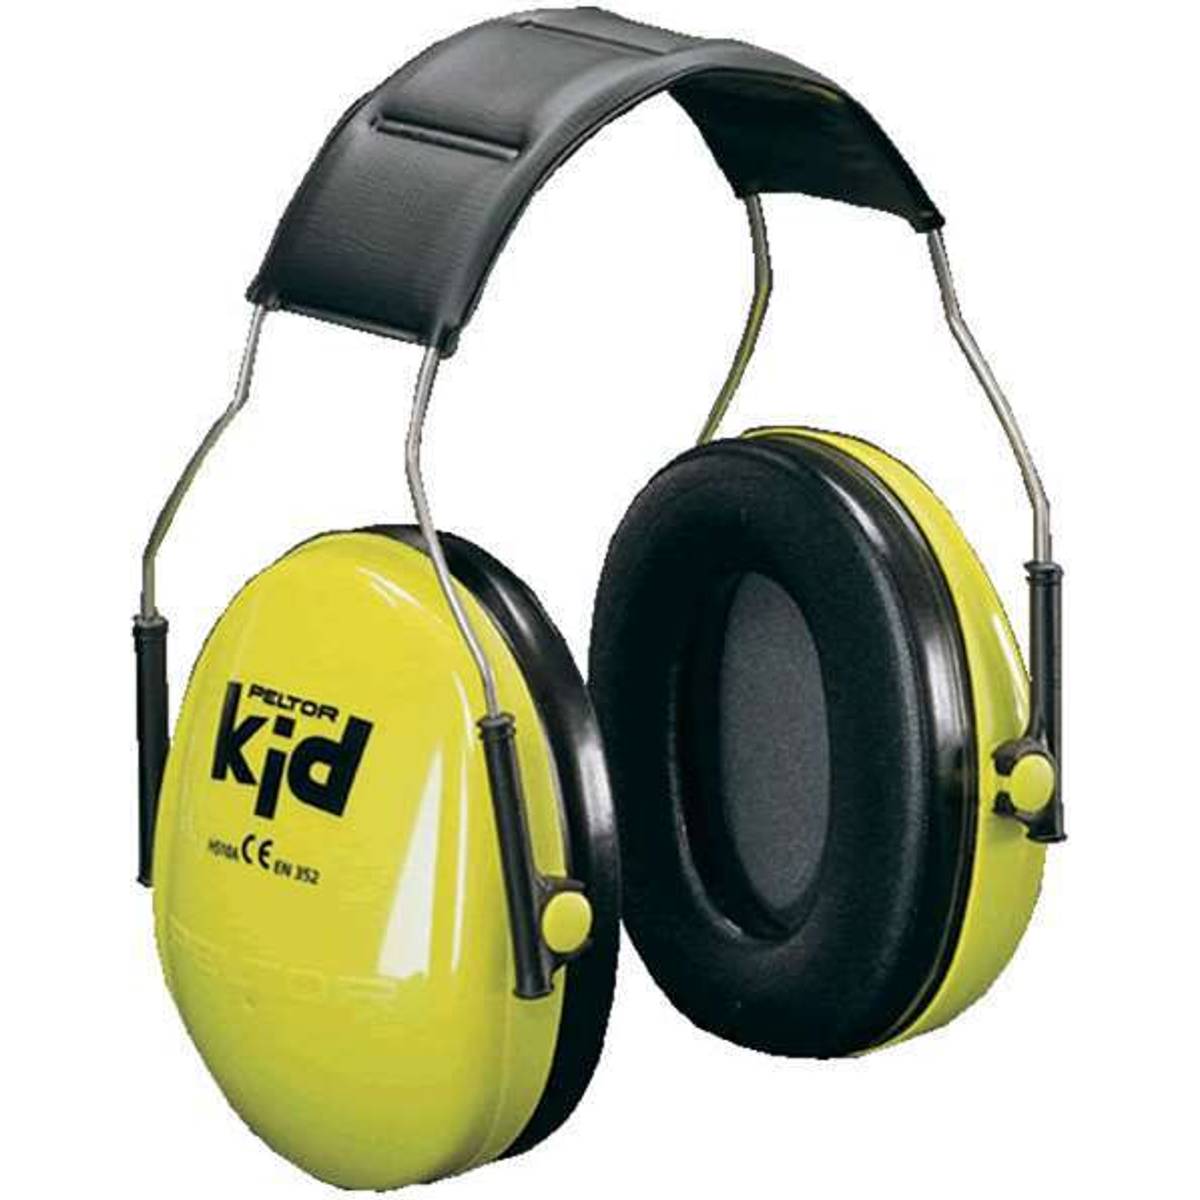 Hørebeskyttelse (59 produkter) hos PriceRunner • Se priser nu »